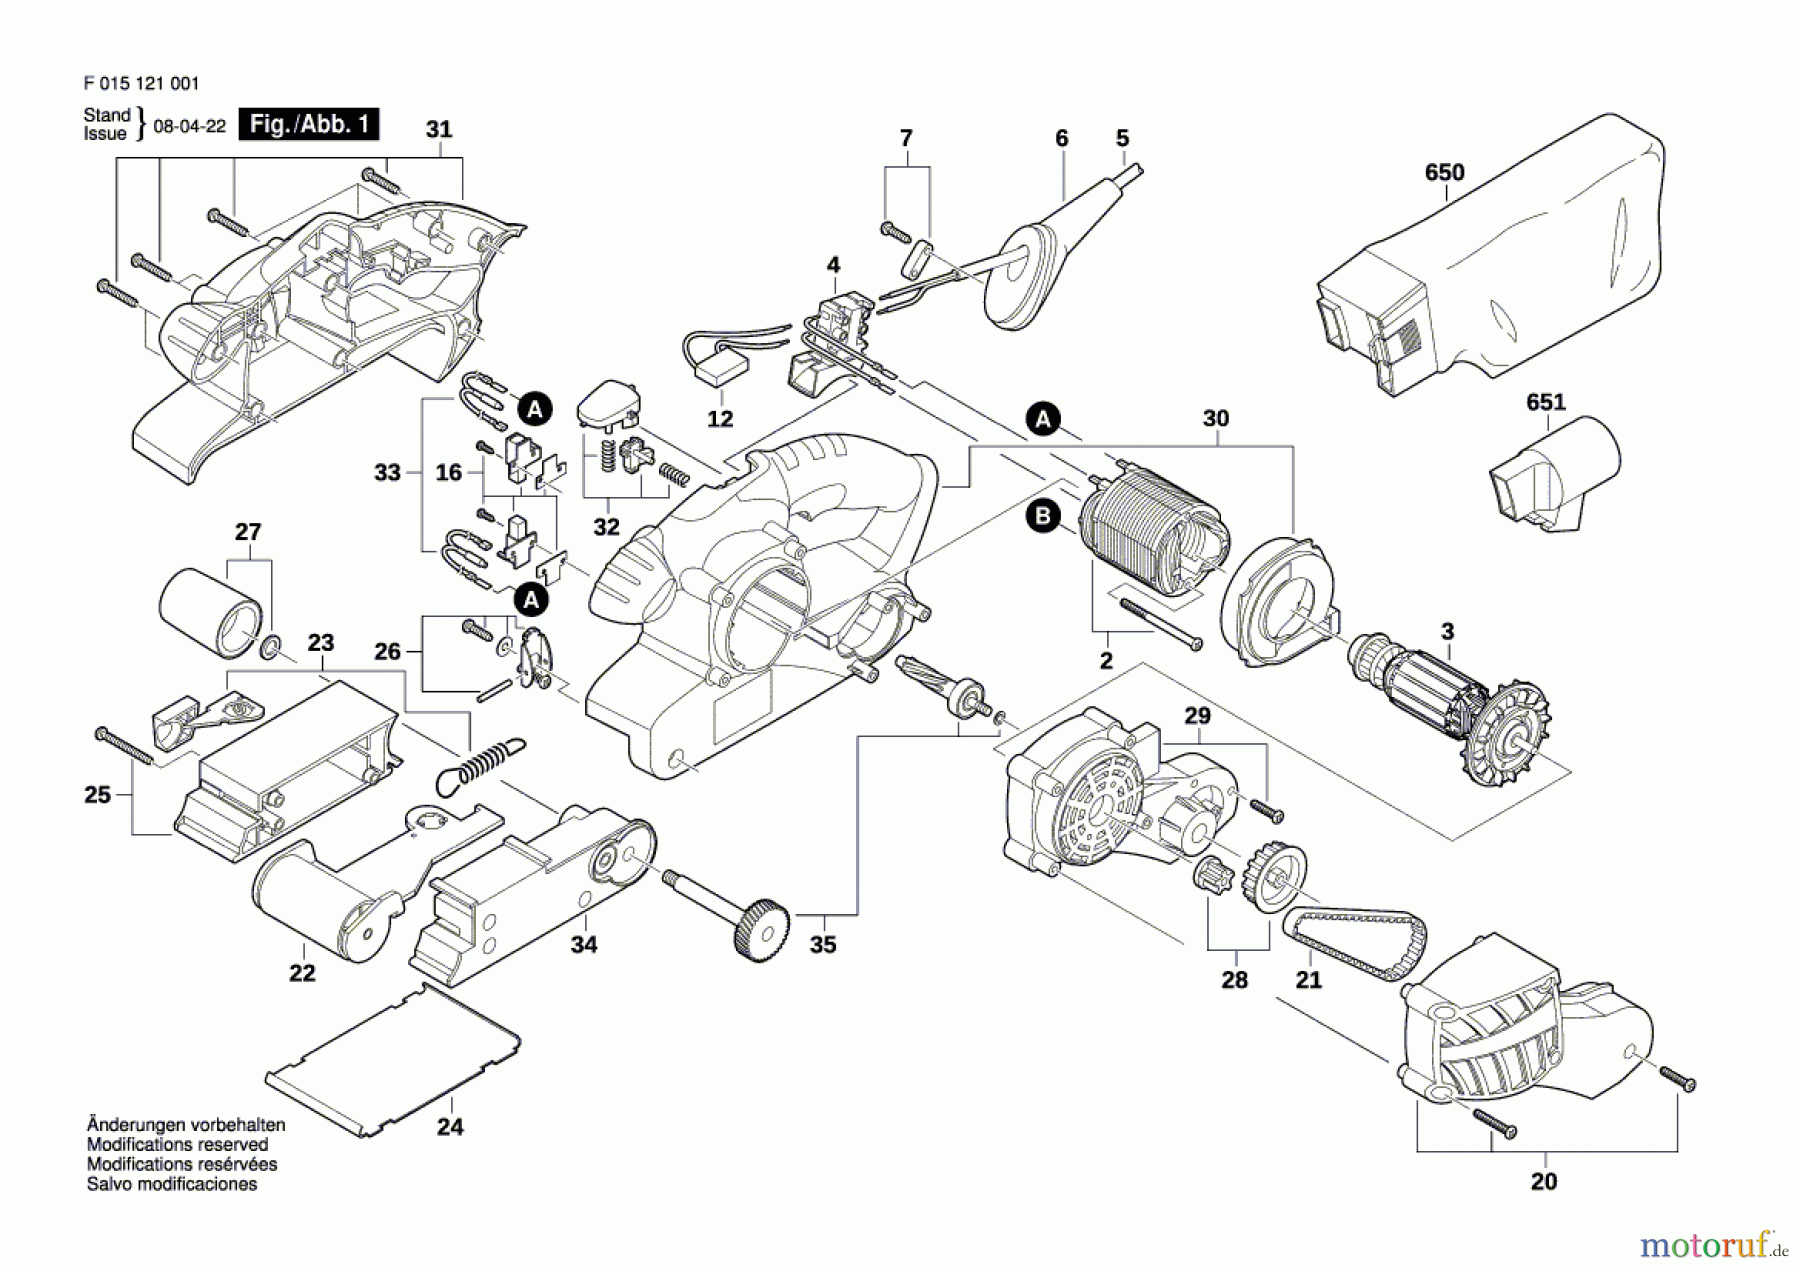  Bosch Werkzeug Bandschleifer 1210 Seite 1